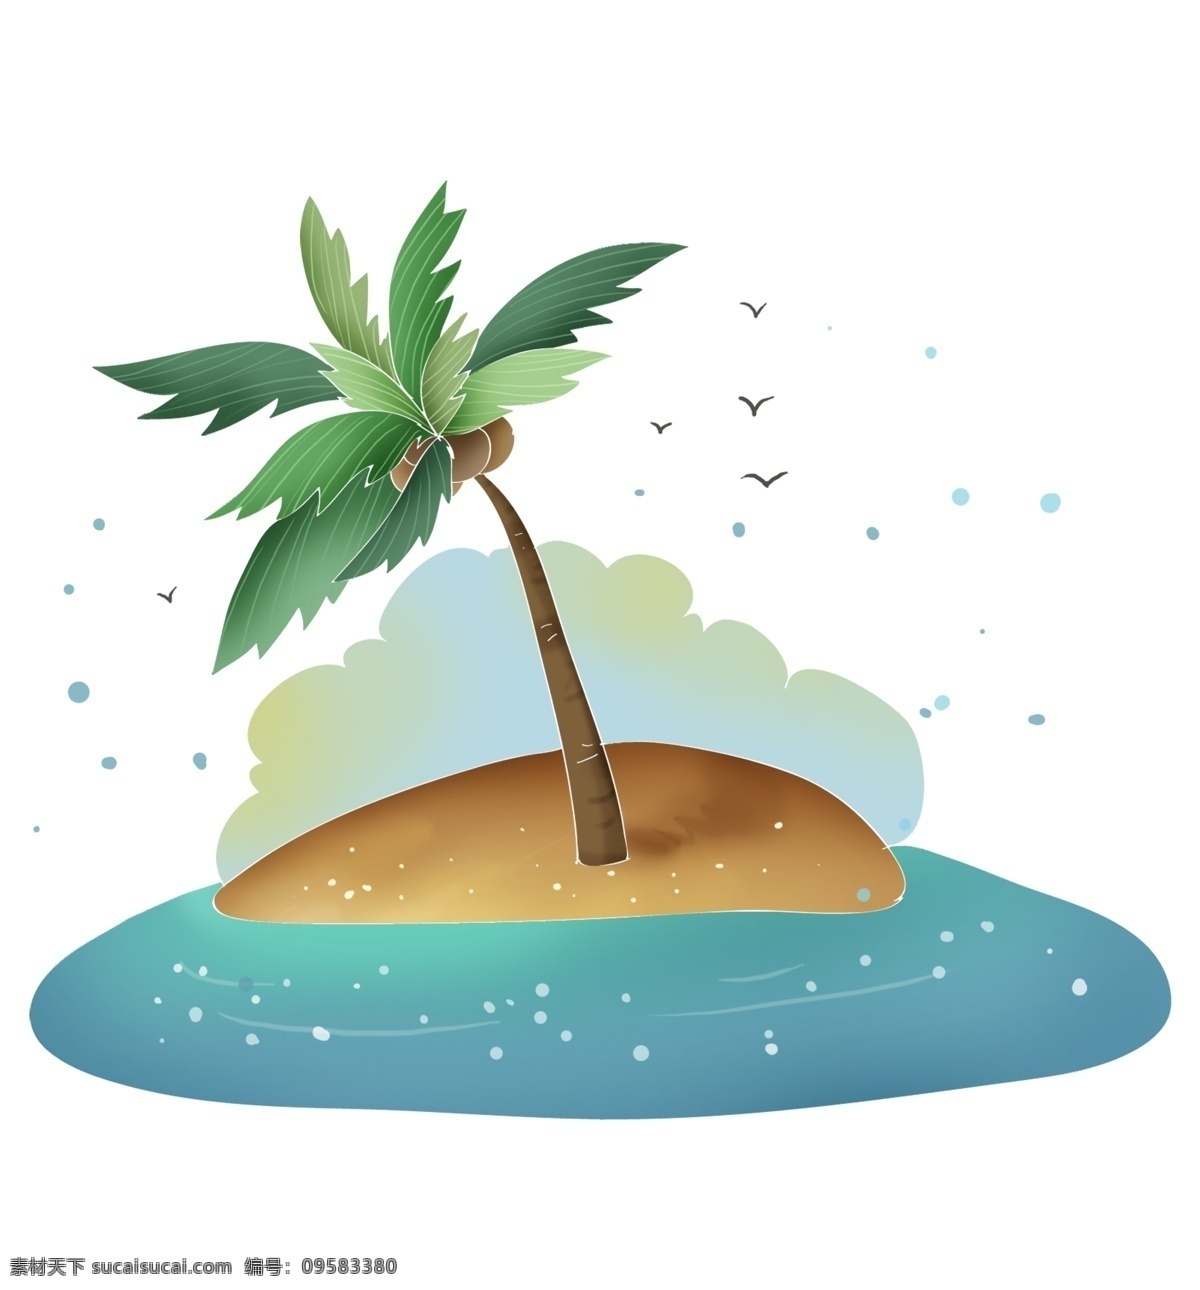 夏季 海岛 旅游 沙滩 椰树 叶子 椰子树 海边 云朵 海鸥 大海 海岛旅游 夏日海岛度假 暑期旅游 避暑海边度假 游泳